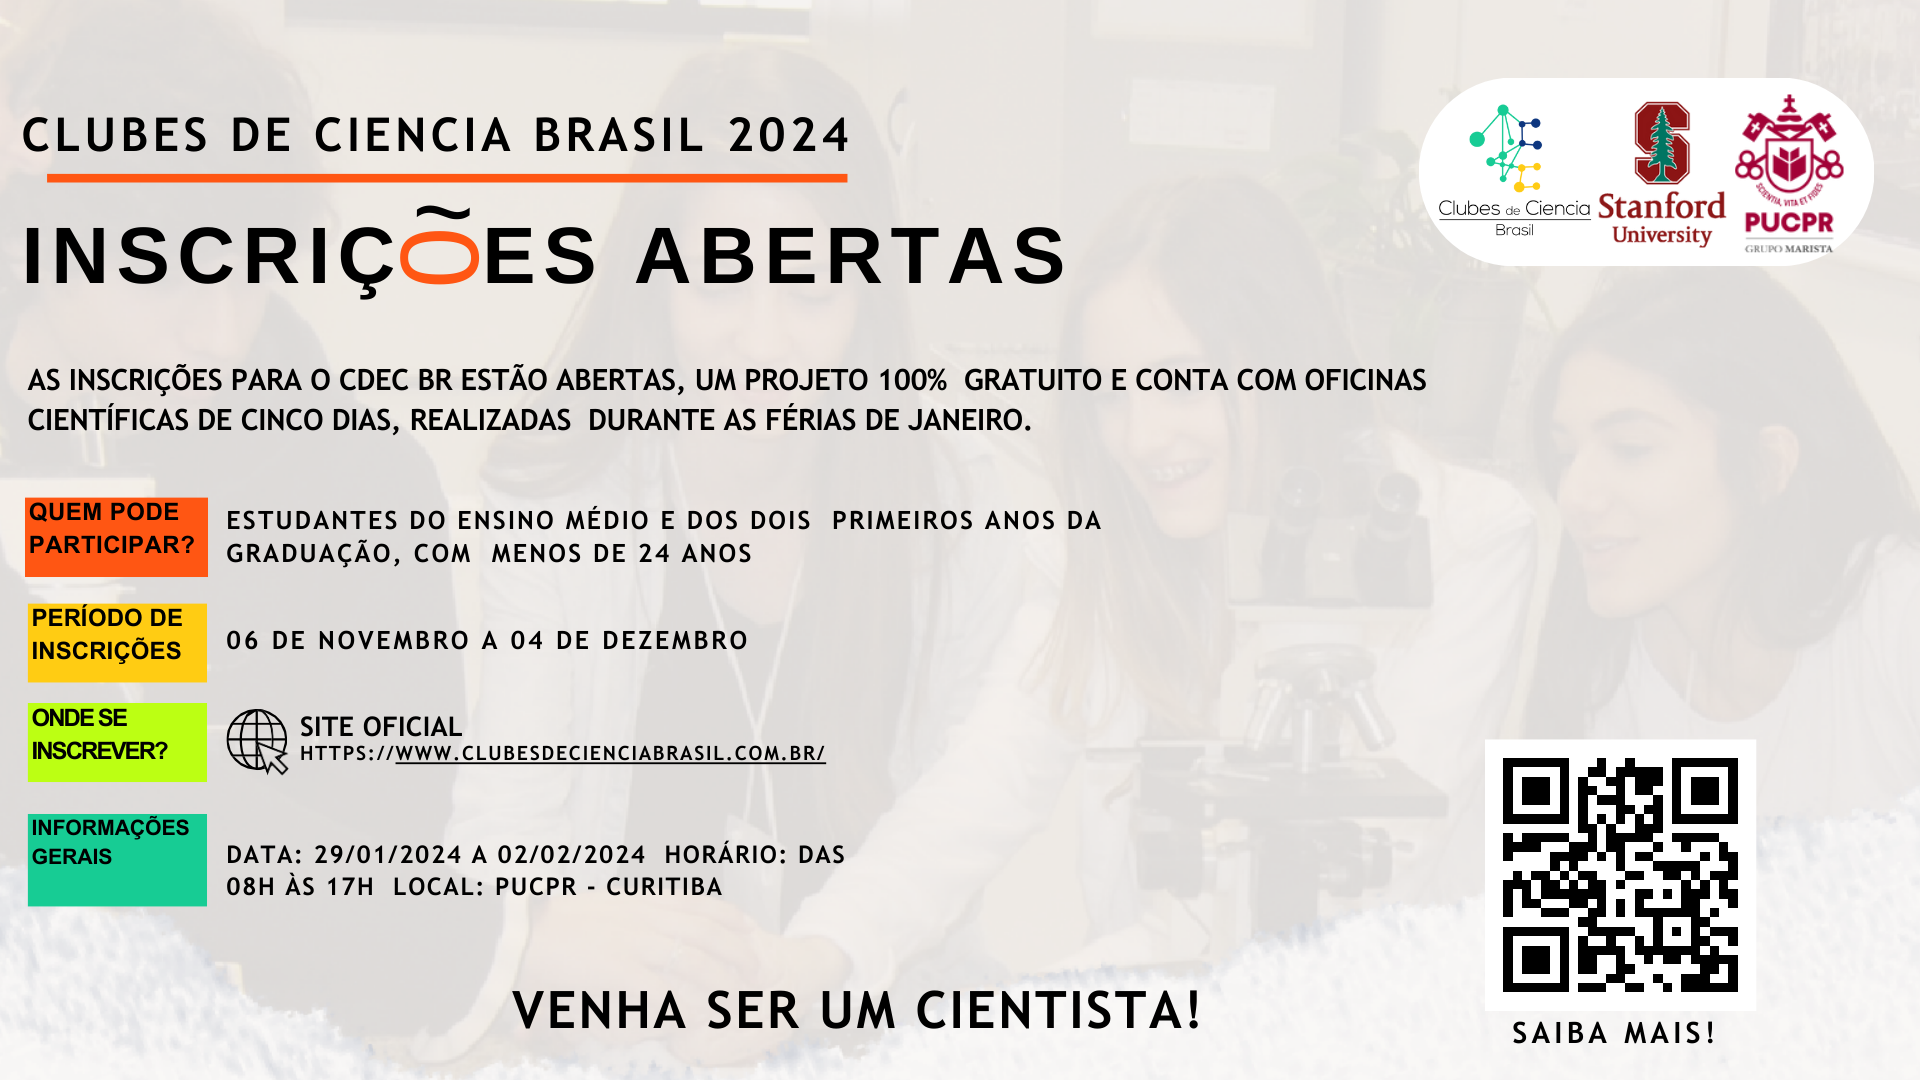 Banner com informações sobre o Clube de Ciência Brasil 2024. Contém estudantes em um laboratório e datas sobre o processo de inscrição.